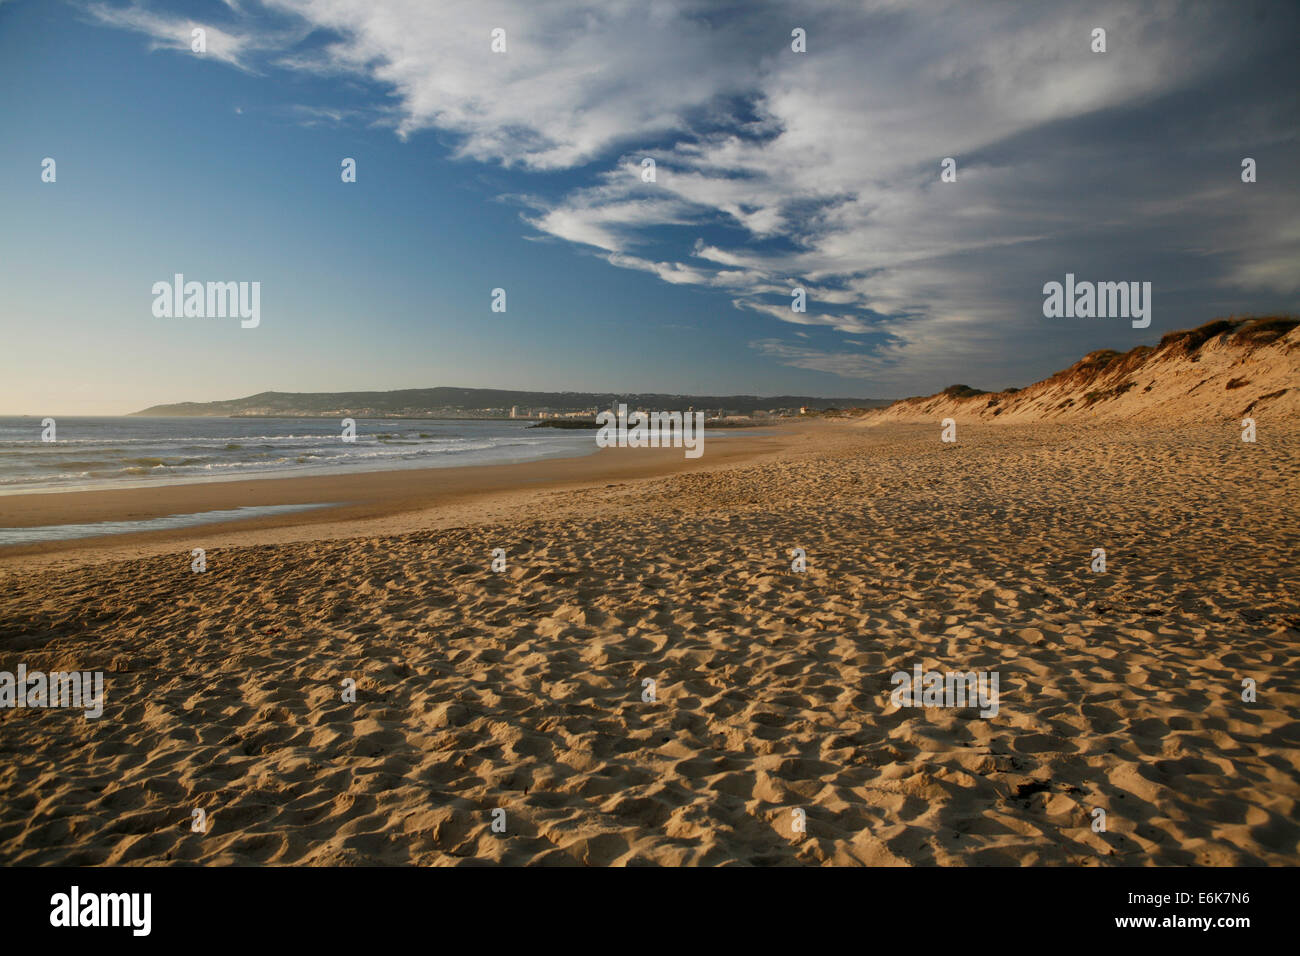 Spuren im Sand, Strand, Wolken im Abendlicht, in Figueira da Foz, Portugal Atlantikküste, Portugal Stockfoto